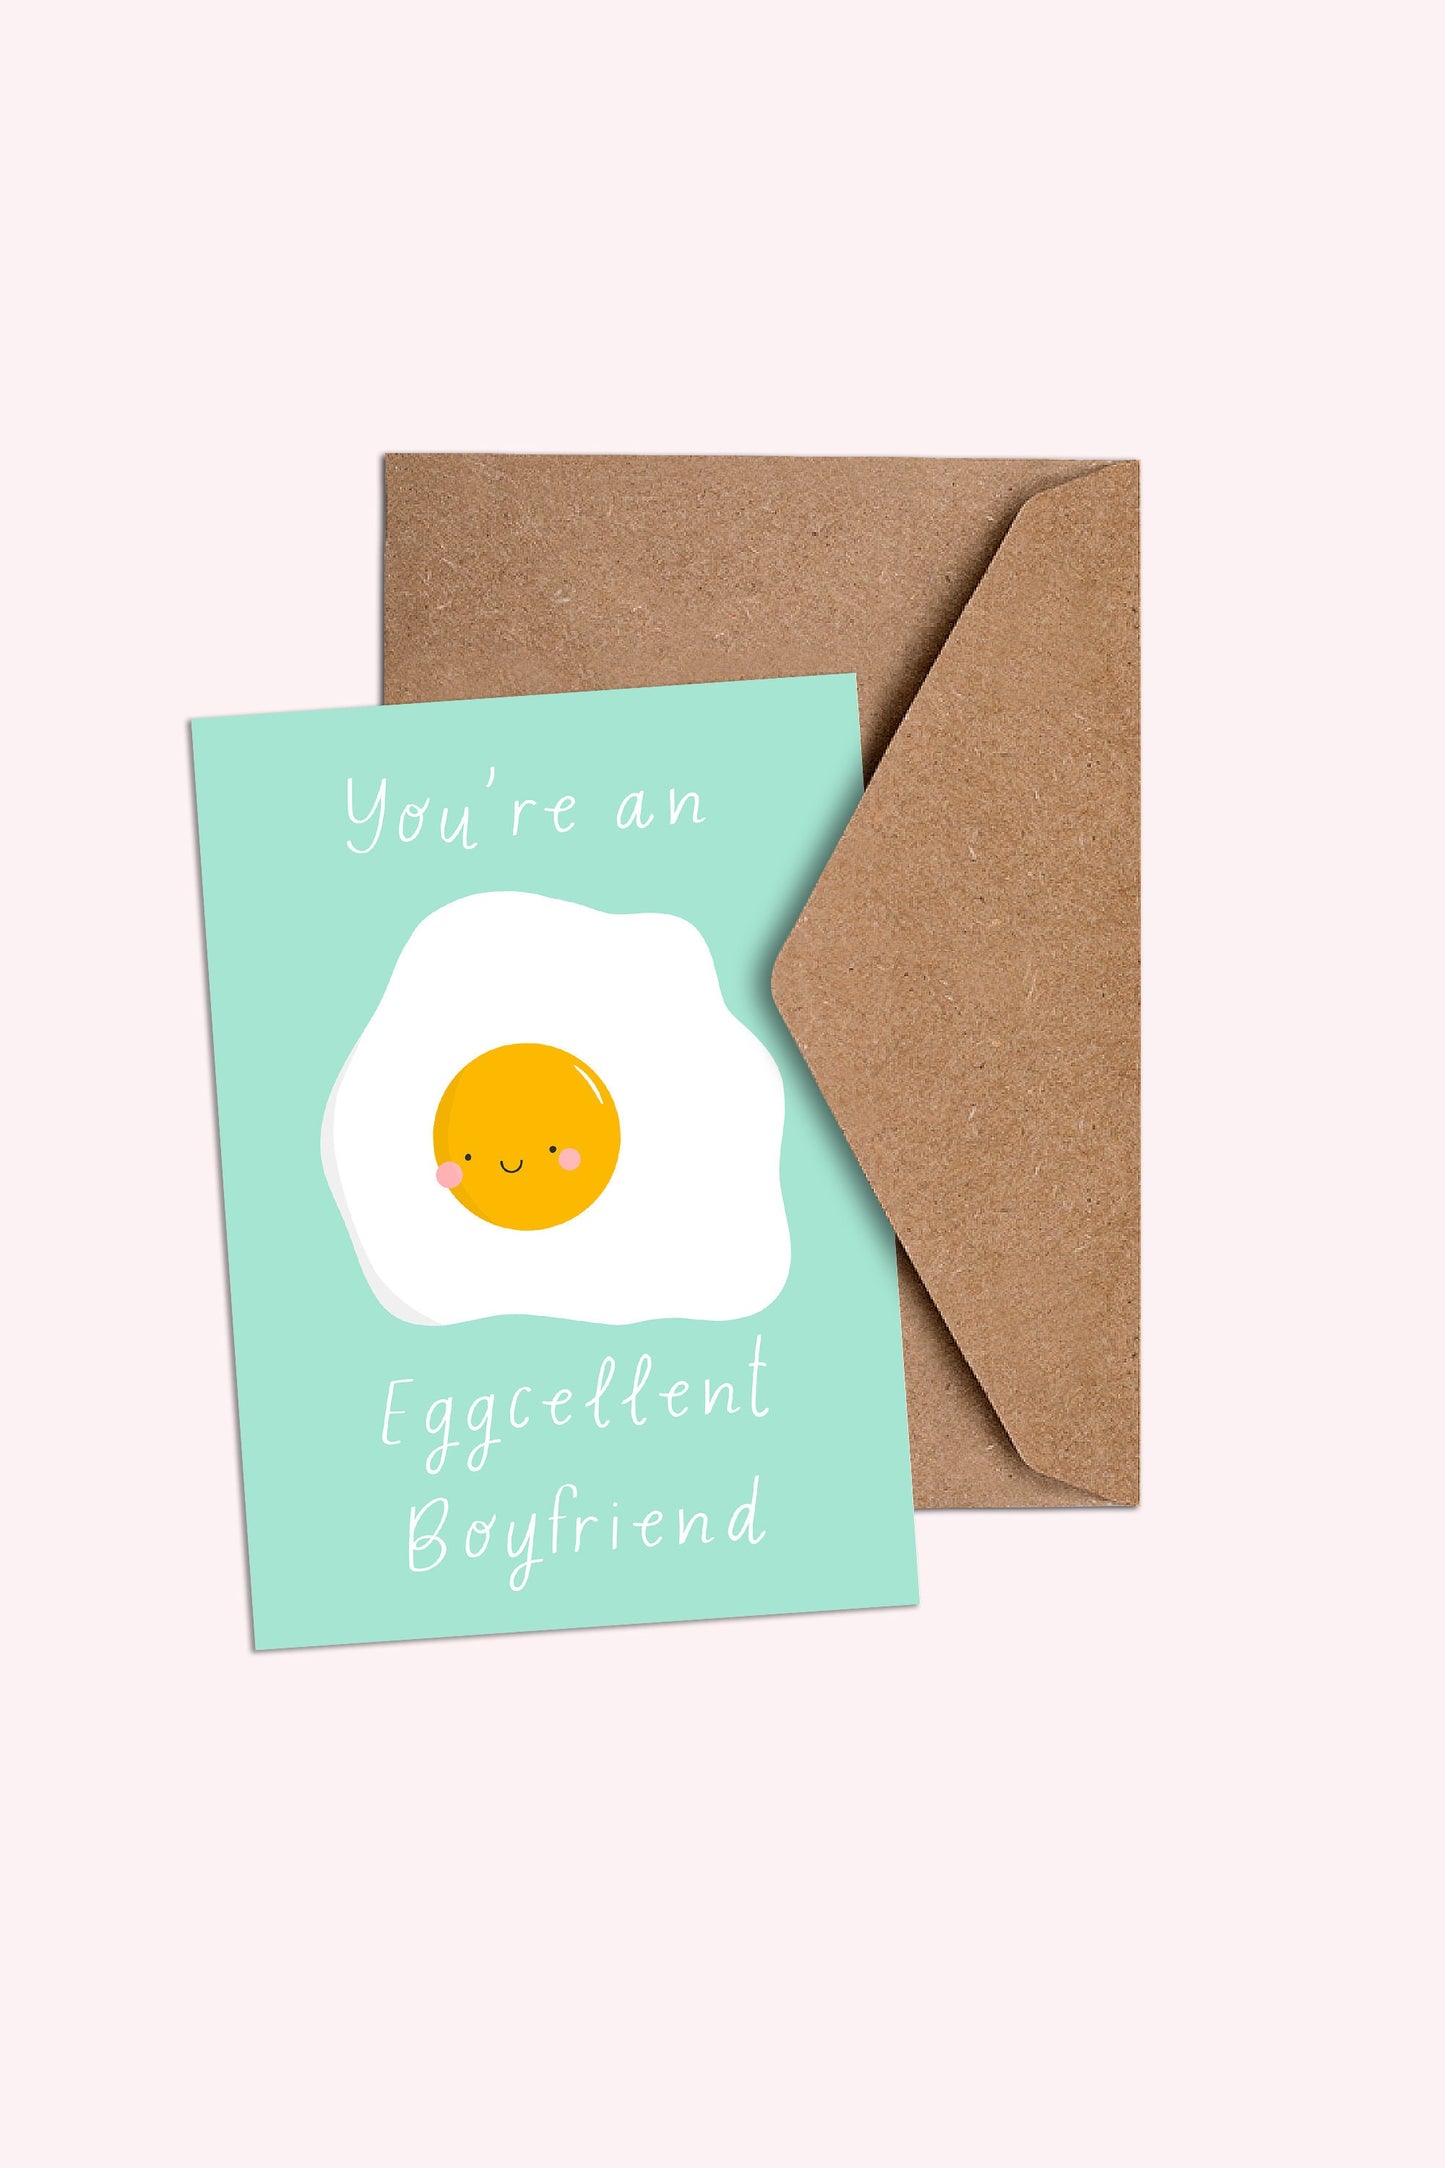 You're an Eggcelent Boyfriend/Girlfriend card